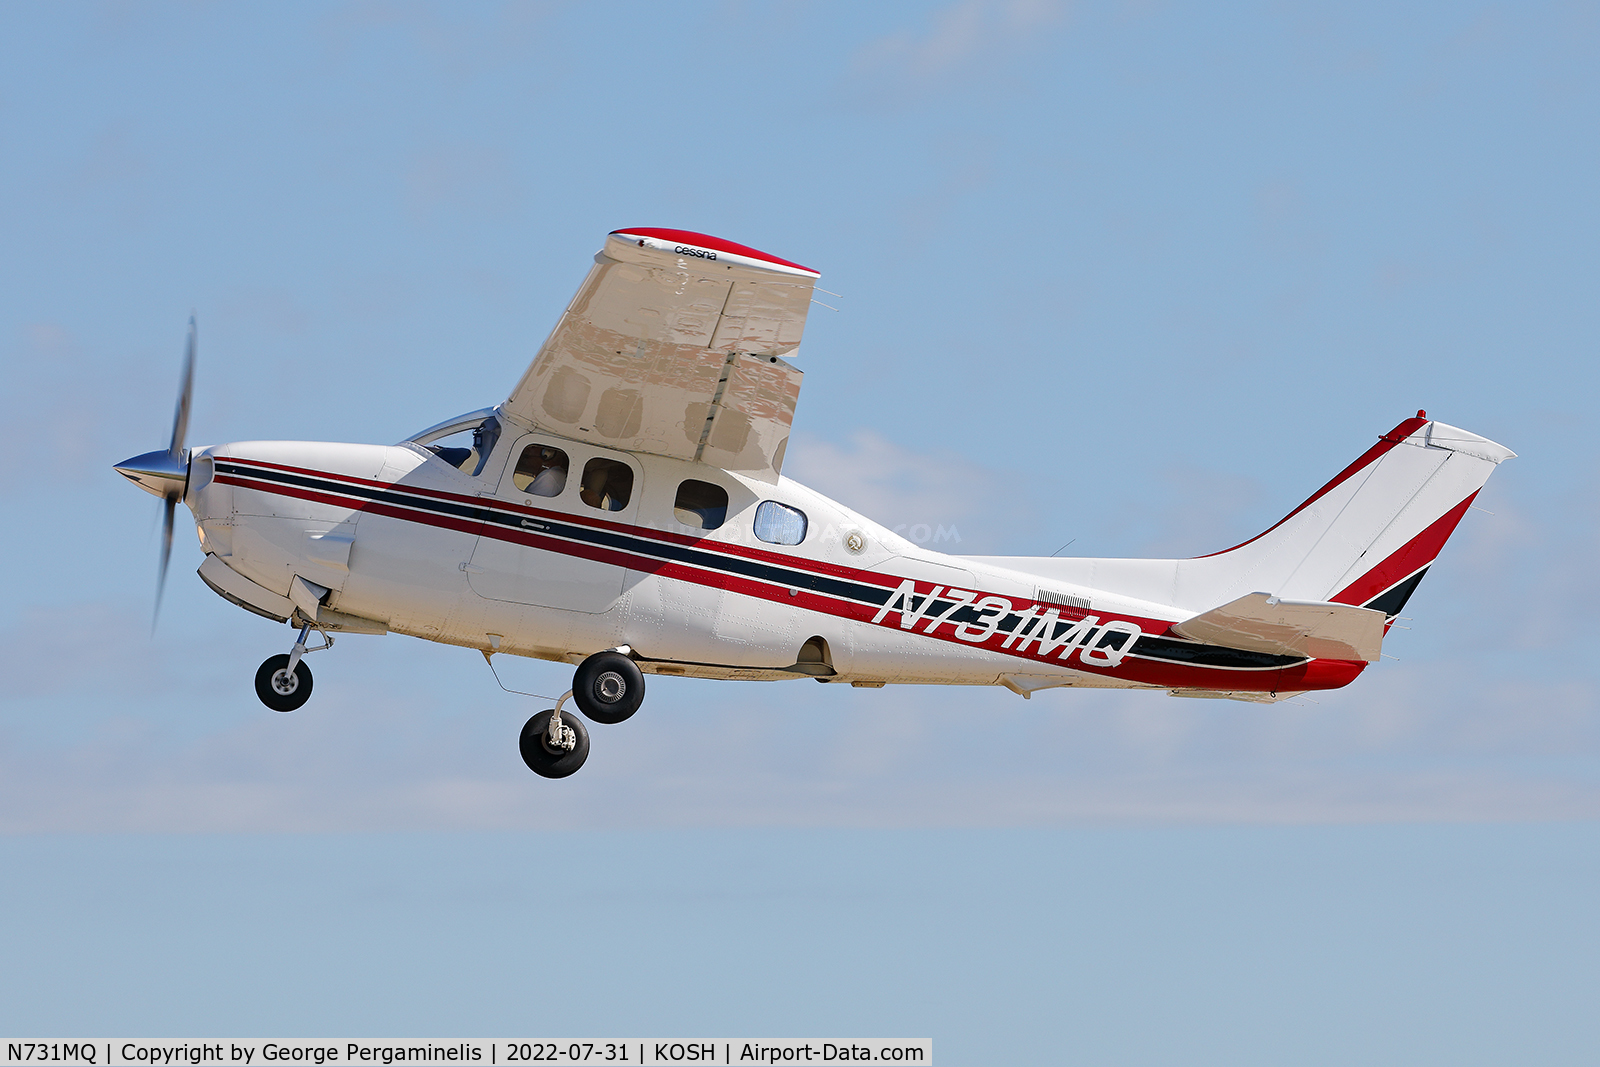 N731MQ, 1980 Cessna P210N Pressurised Centurion C/N P21000496, Runway 27 Oshkosh 2022.